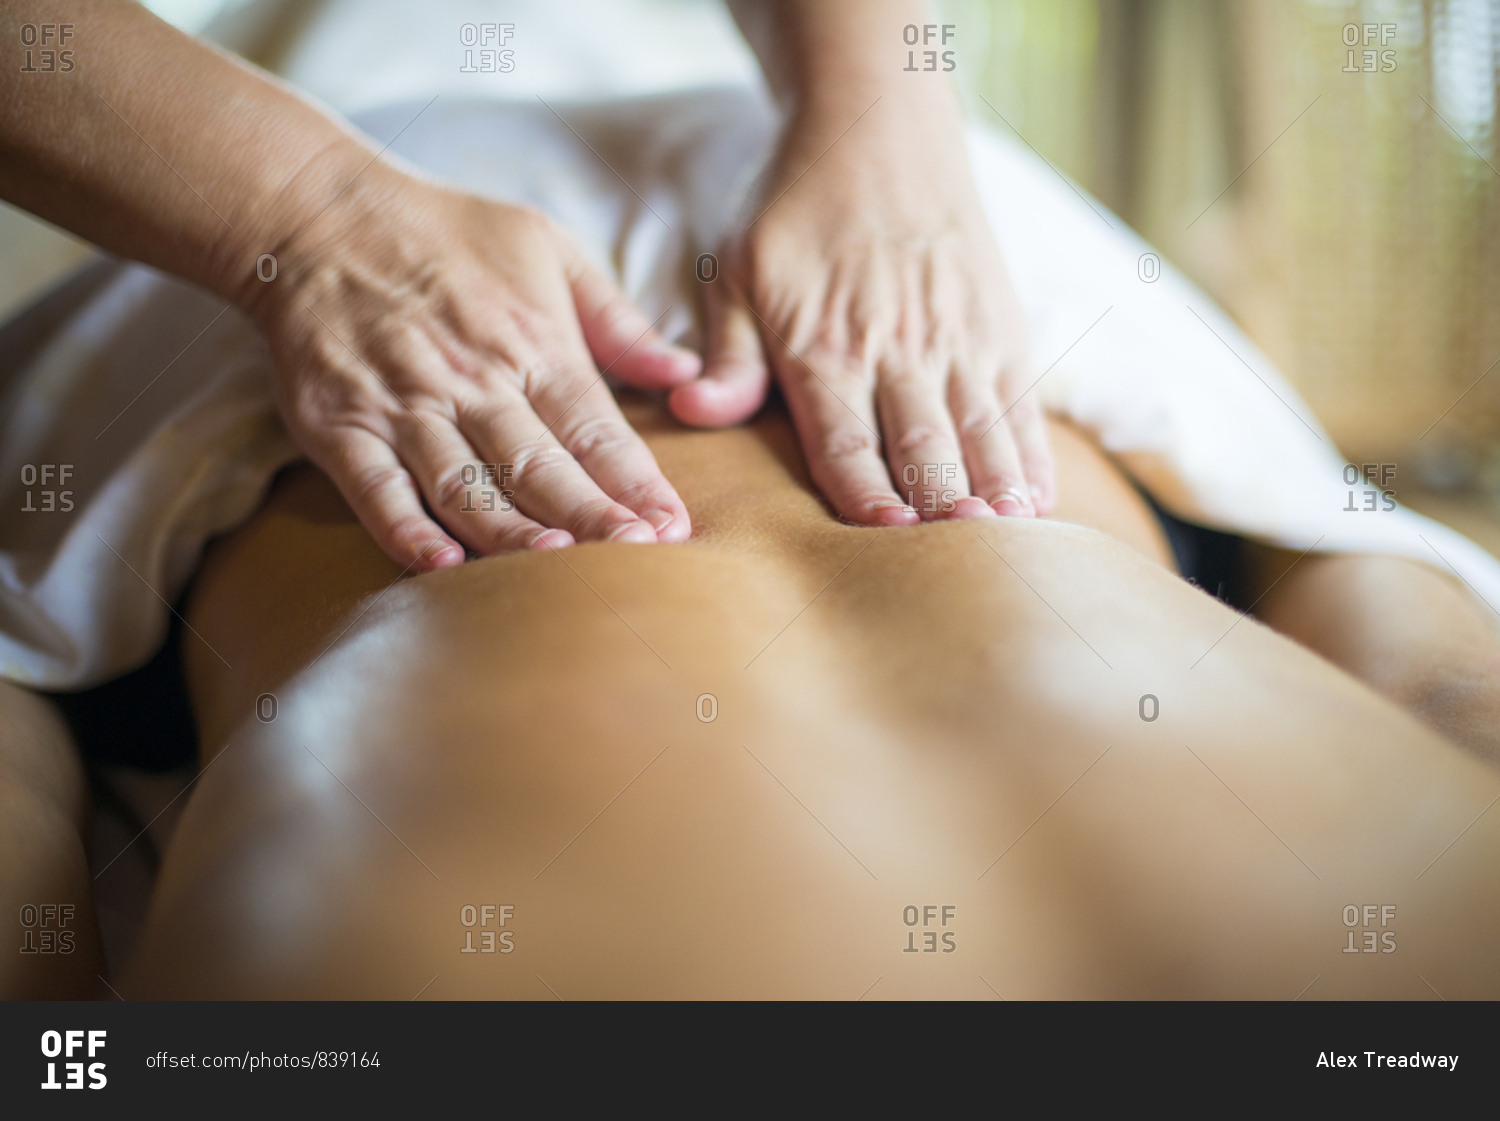 A woman being massaged